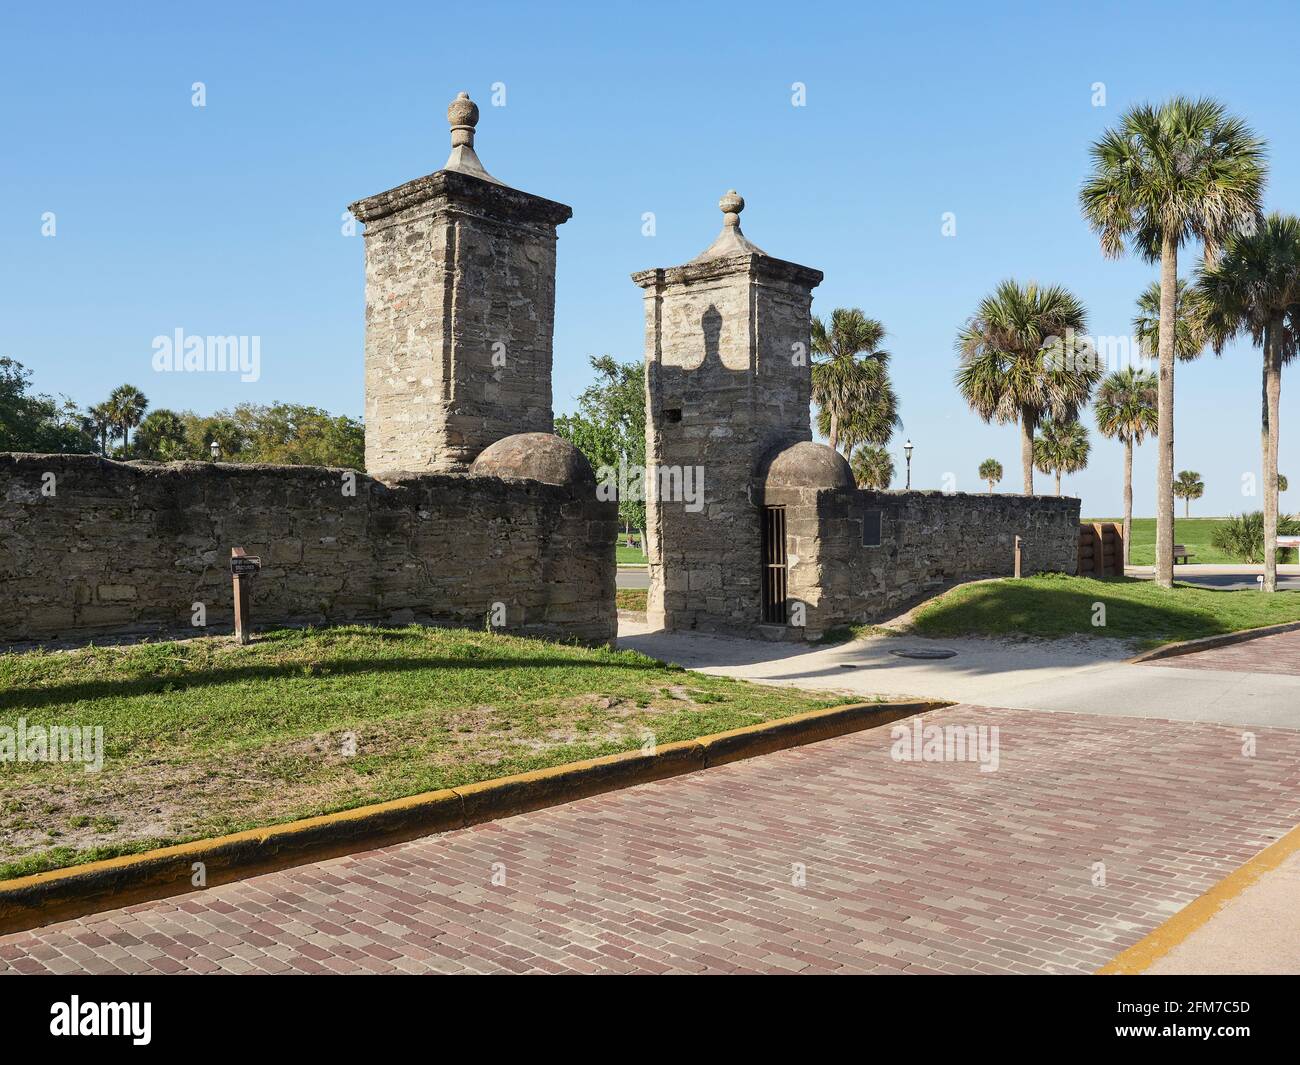 Old Town City Gate, que es la puerta original al primer asentamiento español en América, St Augustine Florida, Estados Unidos. Foto de stock